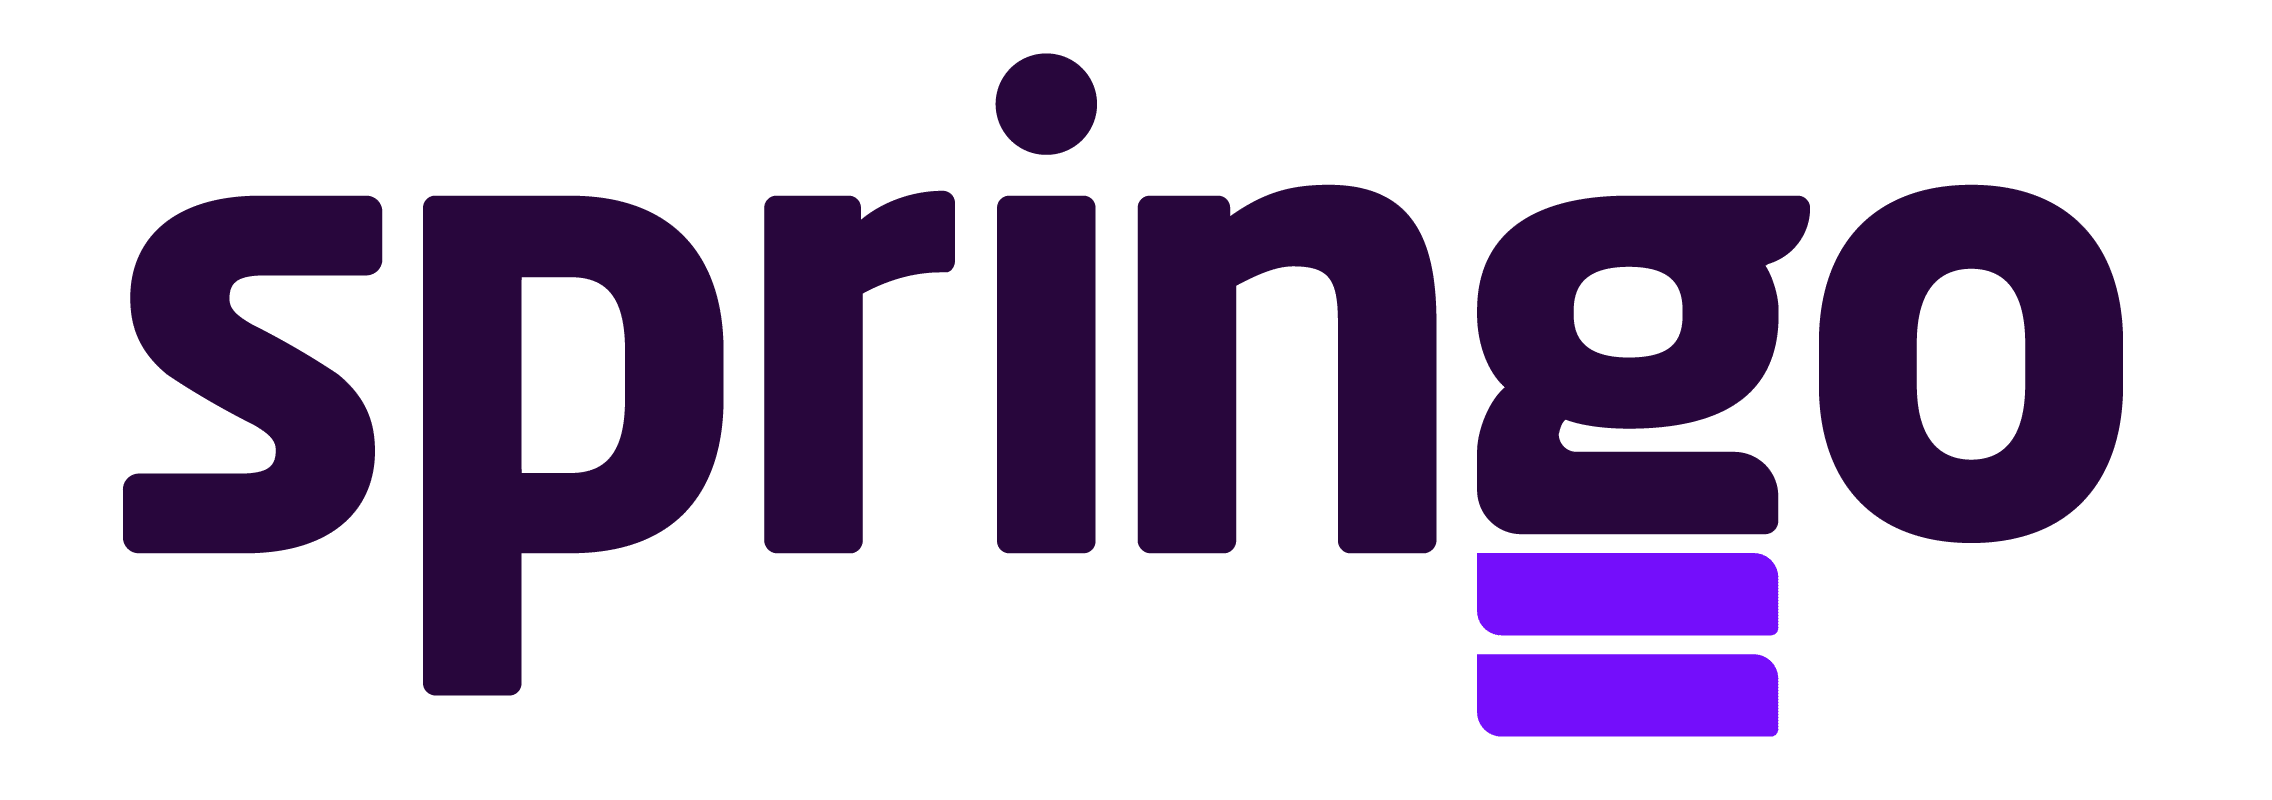 Springo logo